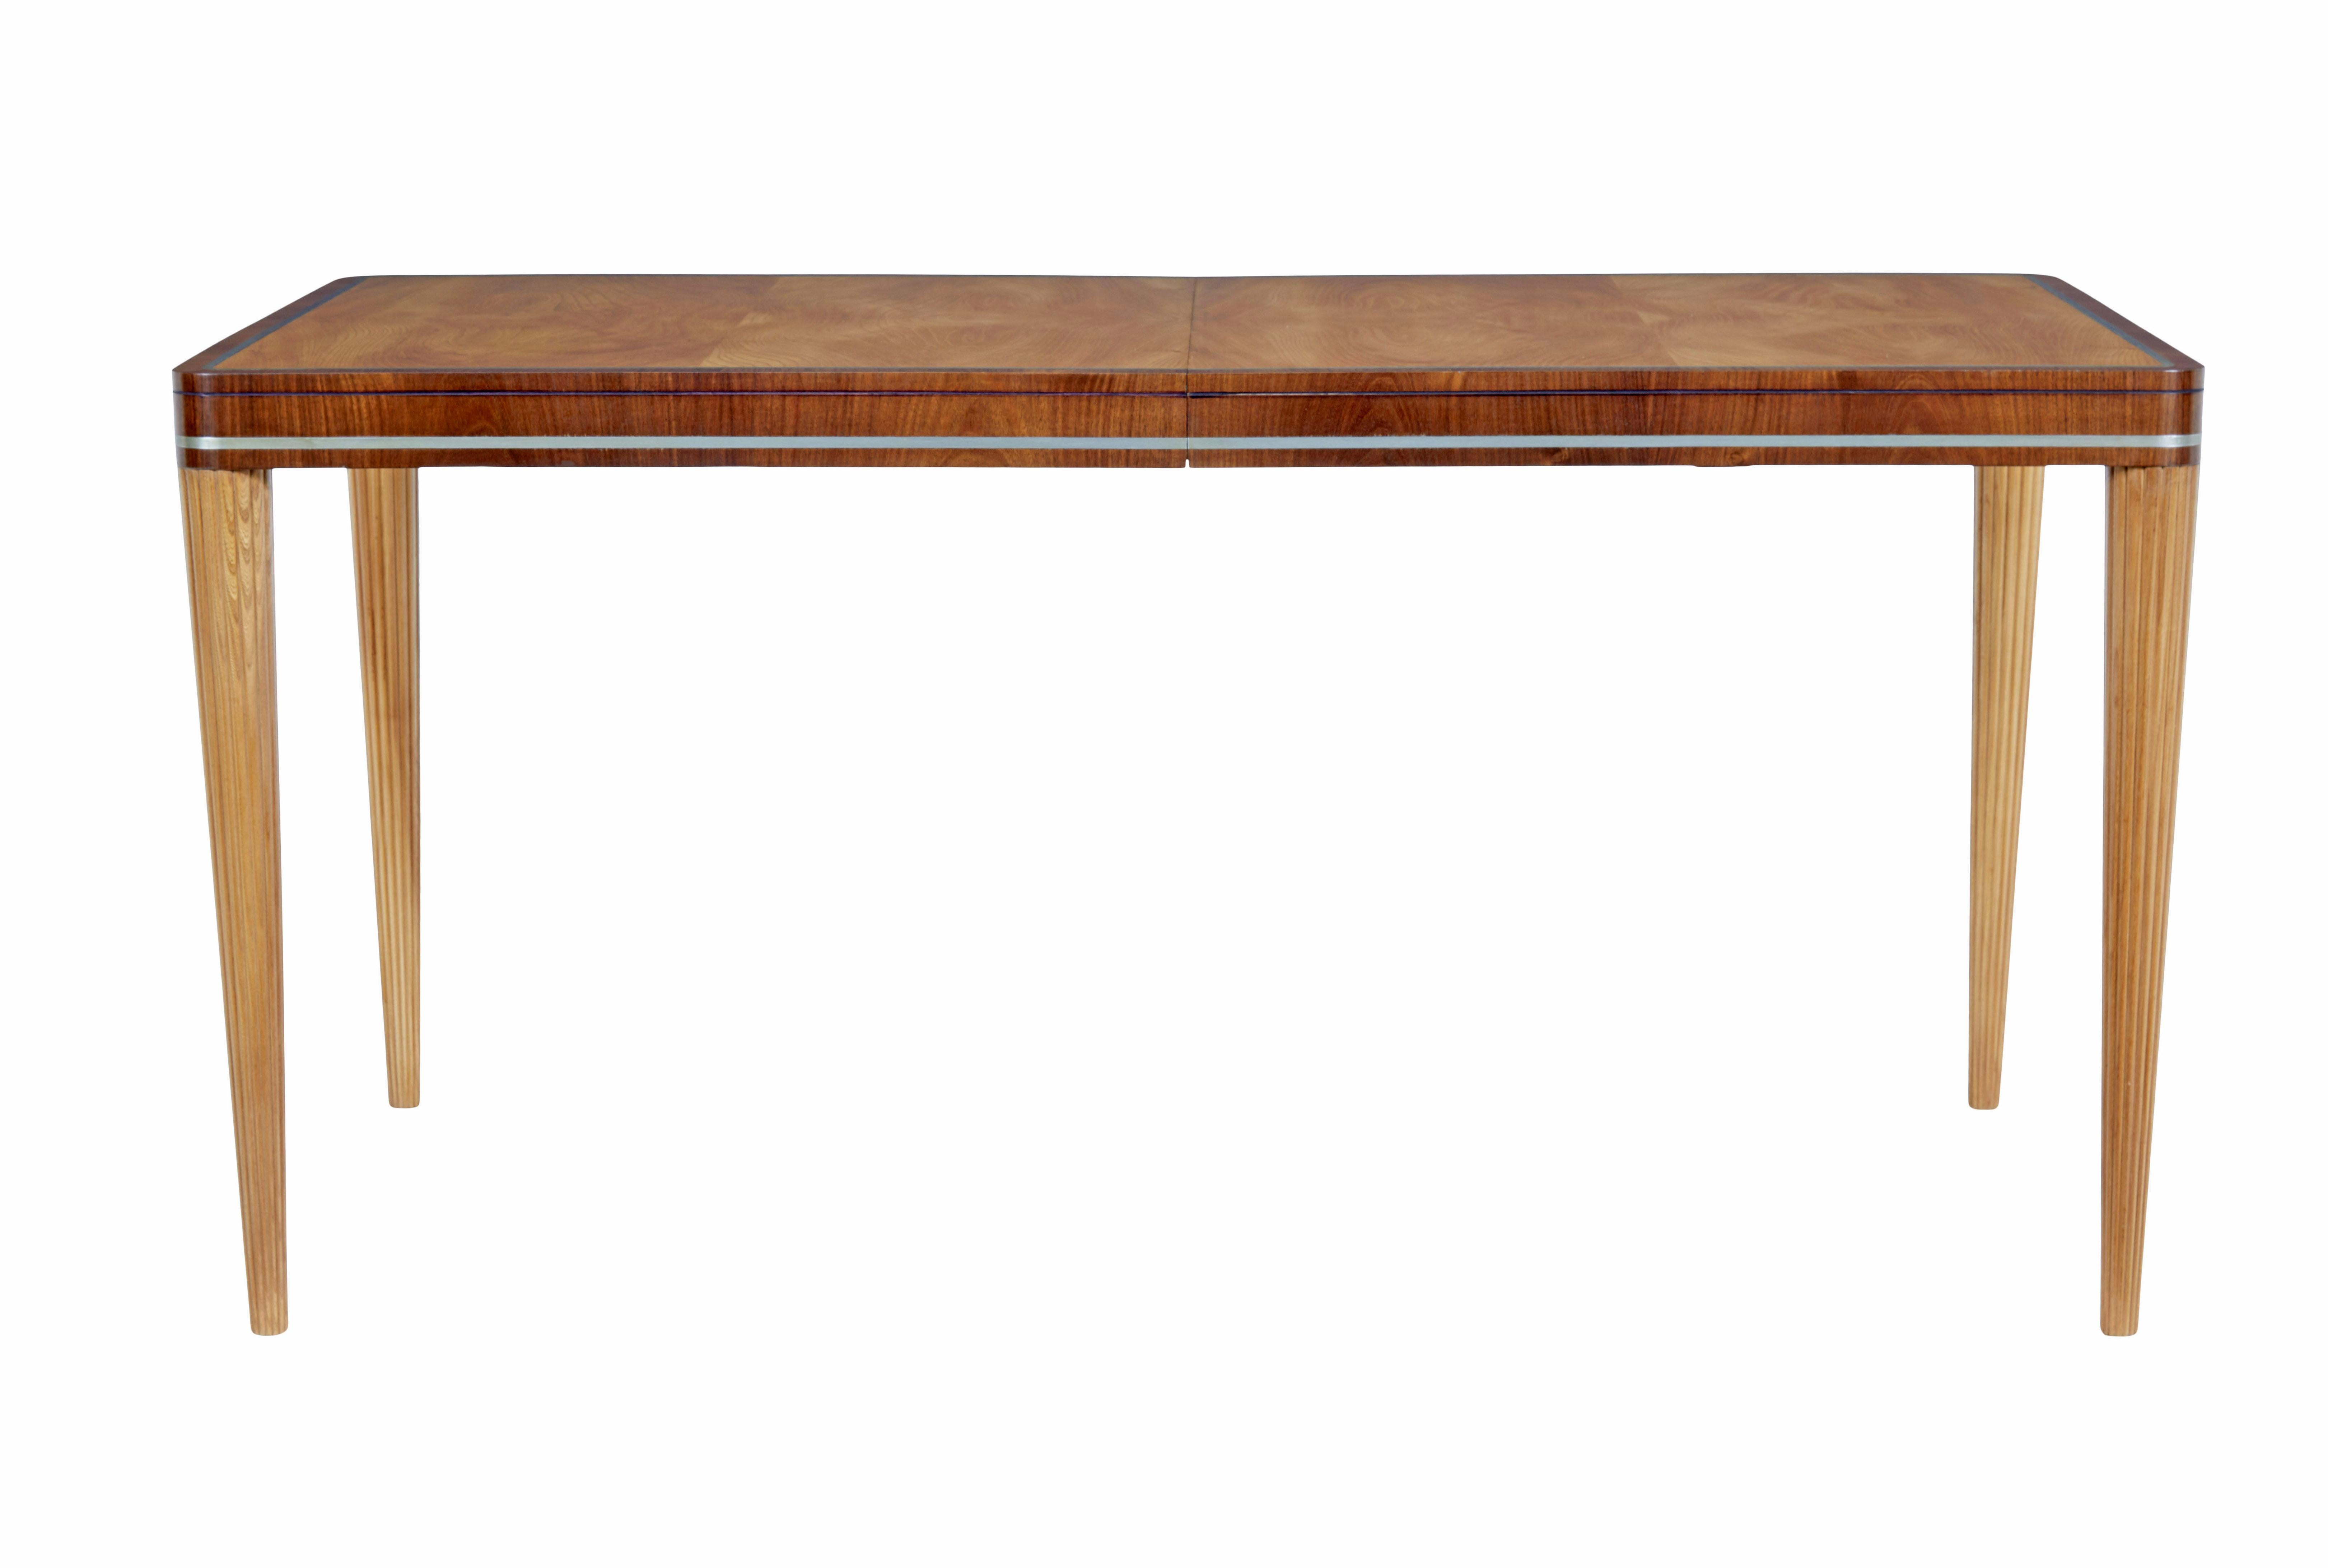 Tisch aus Ulme und Mahagoni von Carl Bergsten, Mitte des 20. Jahrhunderts, um 1930.

Schöner Tisch des bekannten schwedischen Designers carl bergsten (1879-1935)

Dieser Tisch ist ausziehbar, aber derzeit fest geschlossen, es gibt keine Platte. 